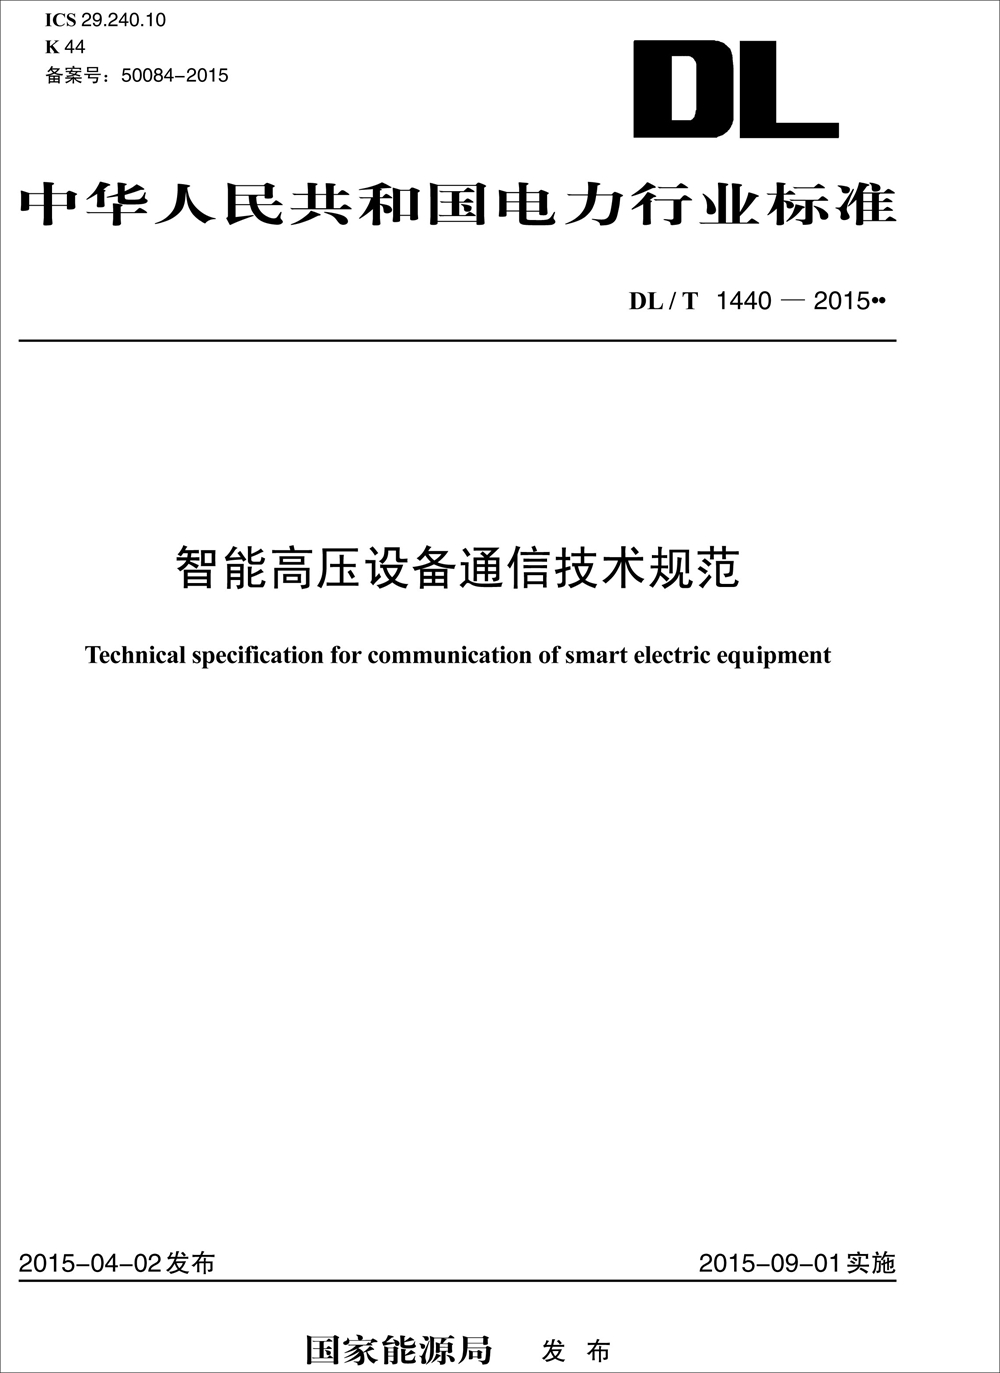 智能高压设备通信技术规范（DL/T 1440—2015） azw3格式下载